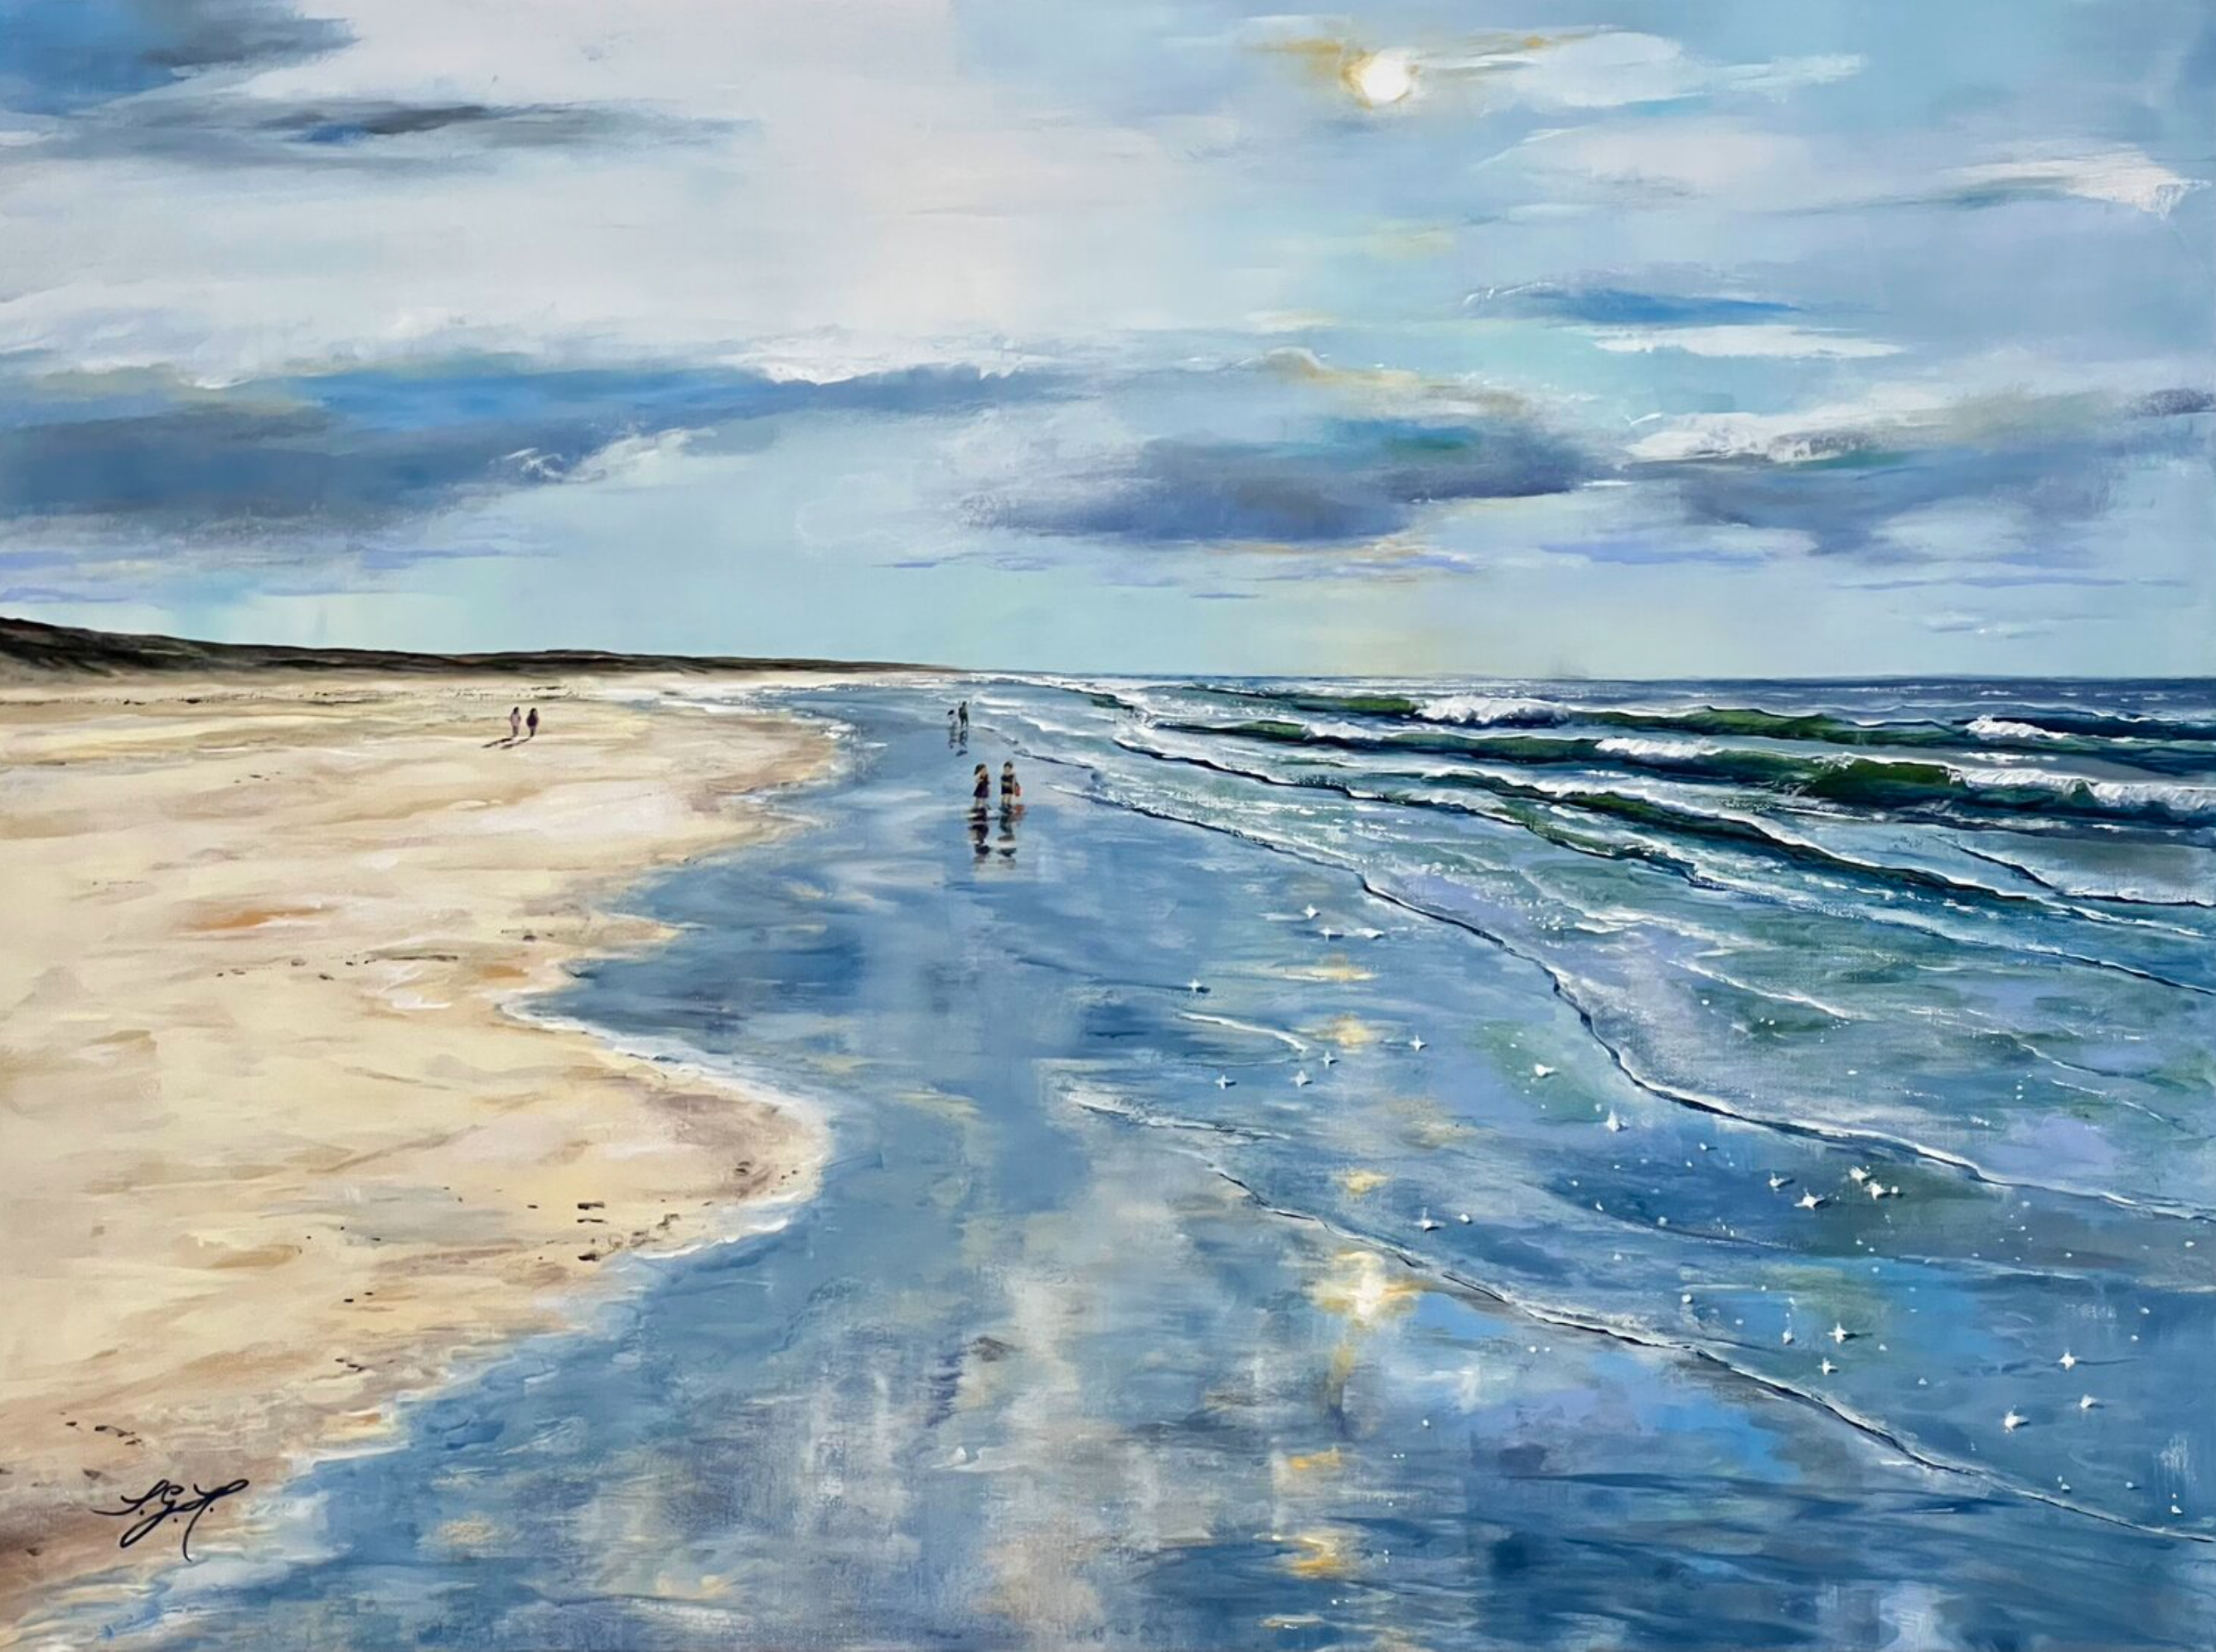 Sandra Gebhardt-Hoepfner的 "夏日时光2 "画作展示了海边的夏日时光。时间静止了，夏天似乎没有尽头。在阳光下散步，大海在你身边。幸福。一切皆有可能。主要颜色是浅蓝色、白色、浅灰色、绿松石色、深灰色、粉红色、桶状的橙色、浅米色、沙棕色。